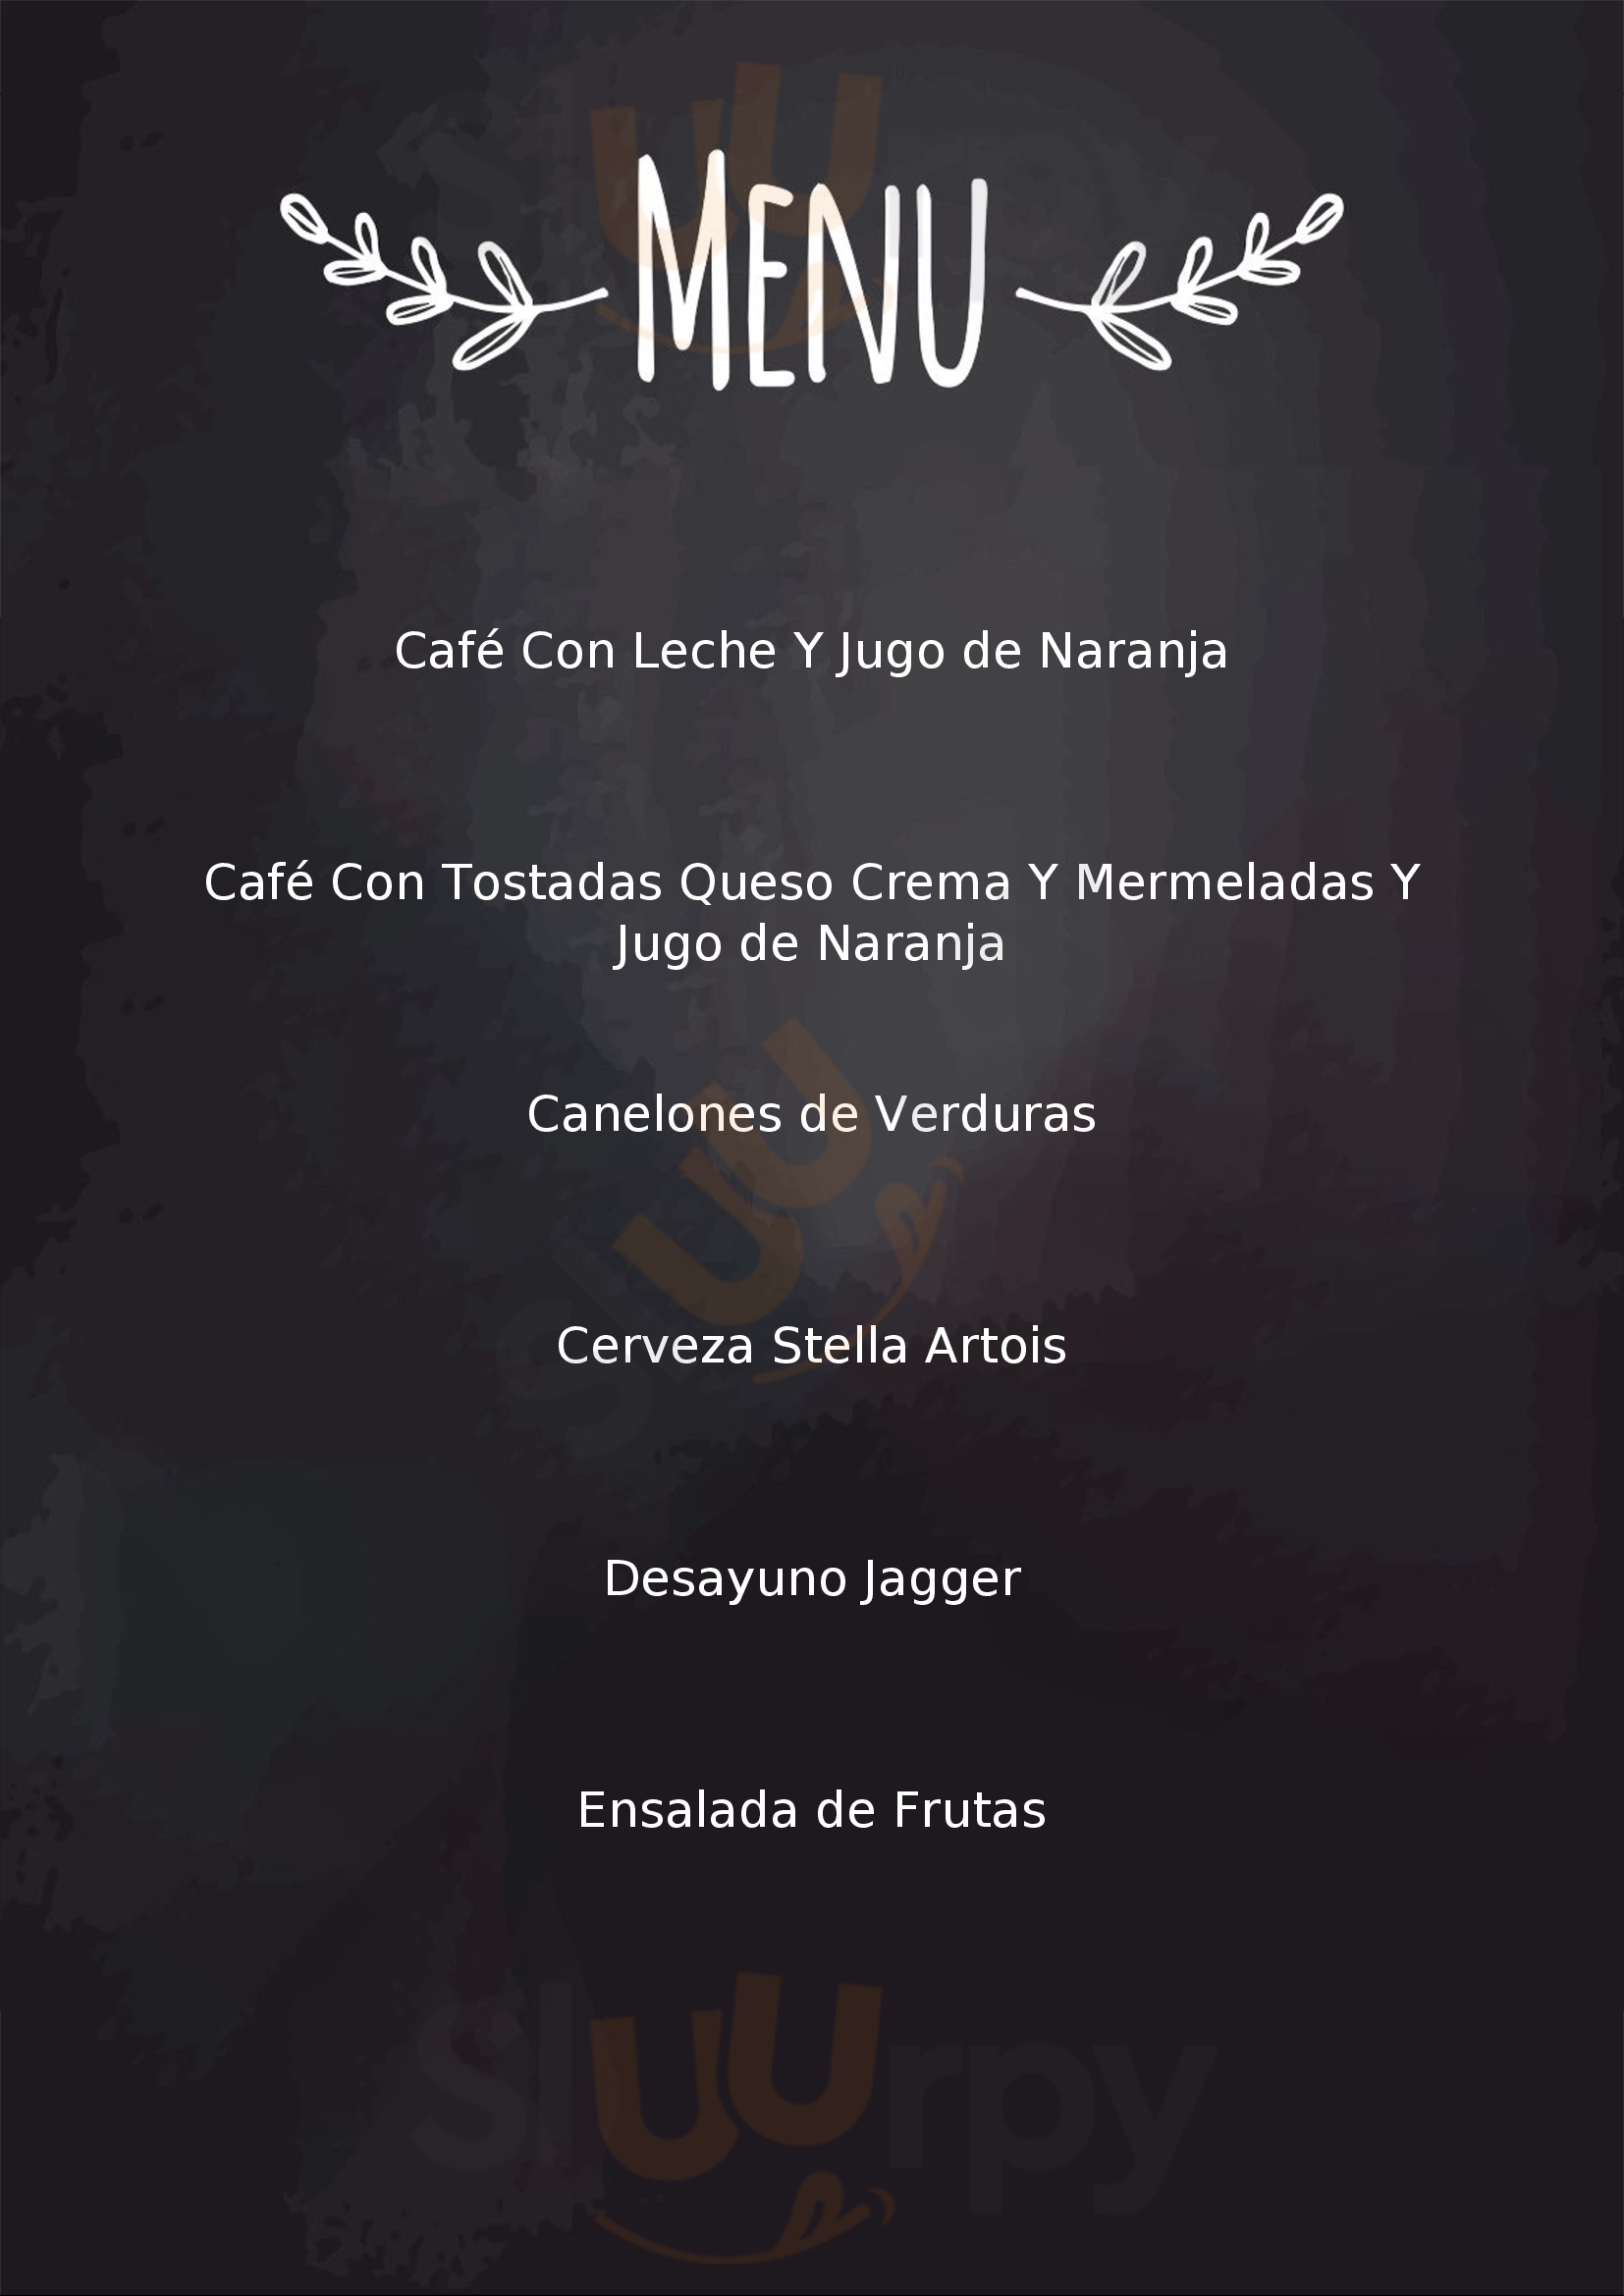 Café Jagger San Pedro Menu - 1